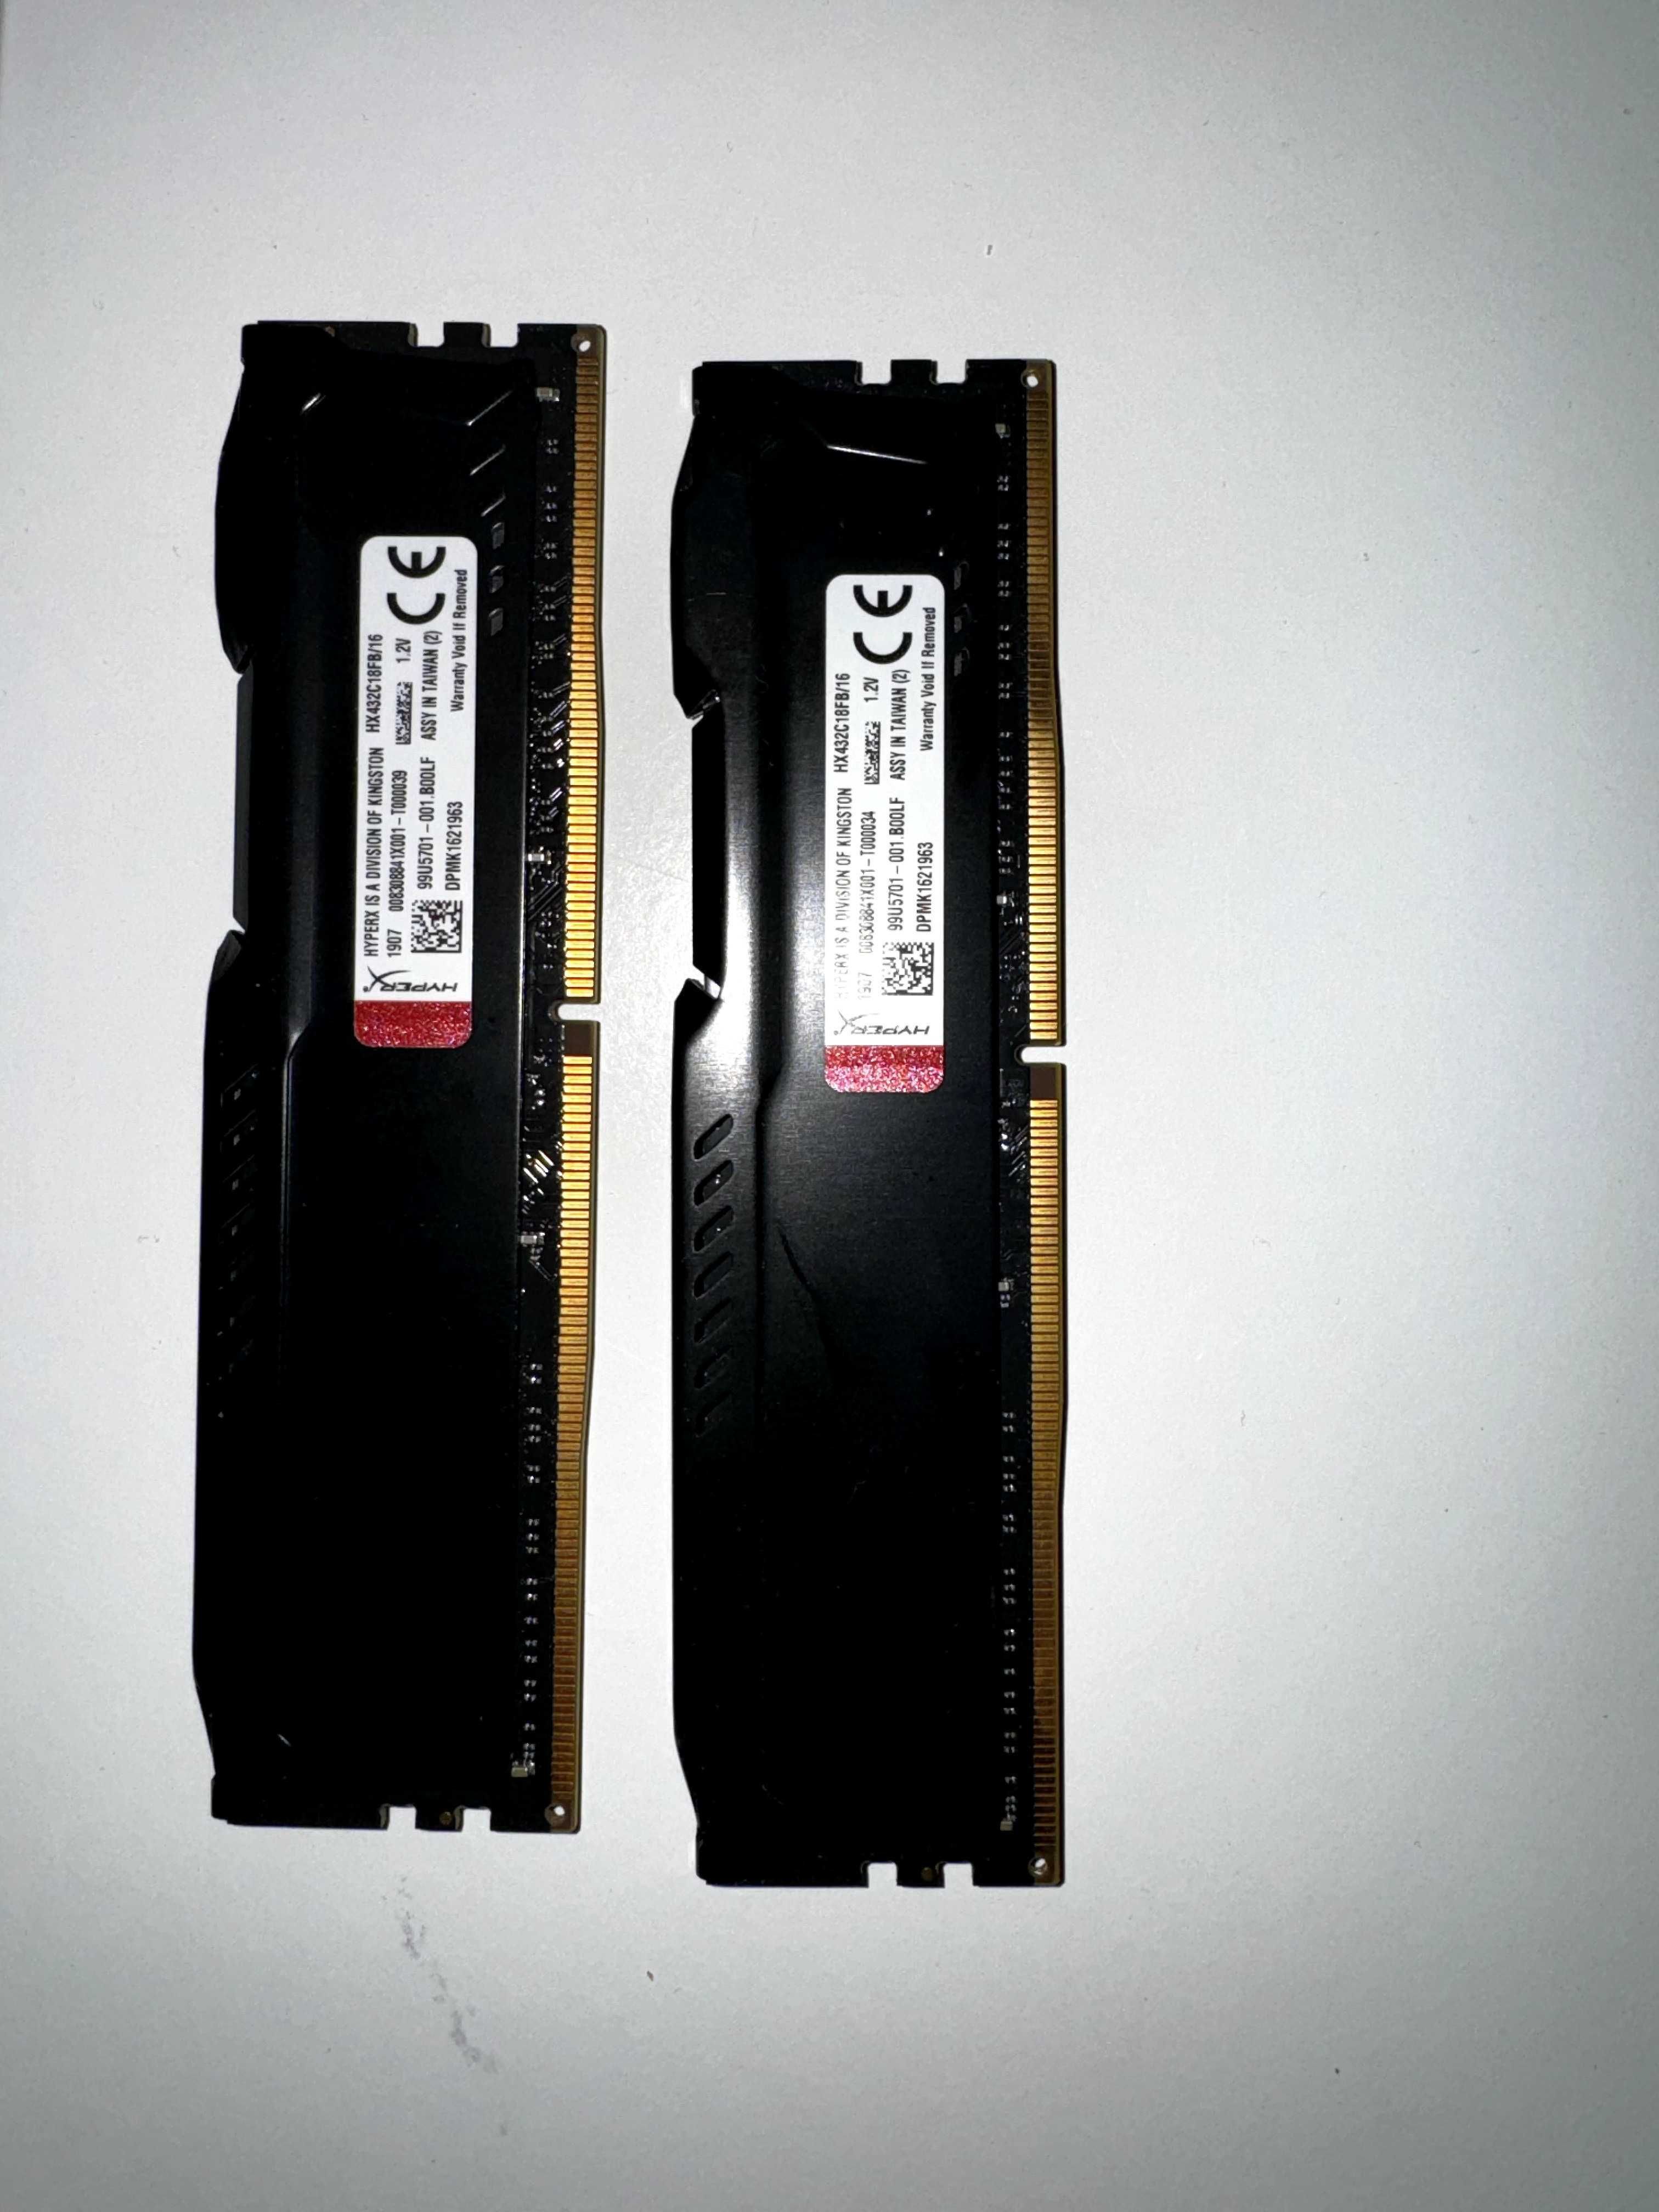 HyperX RAM DDR4 16gb x2